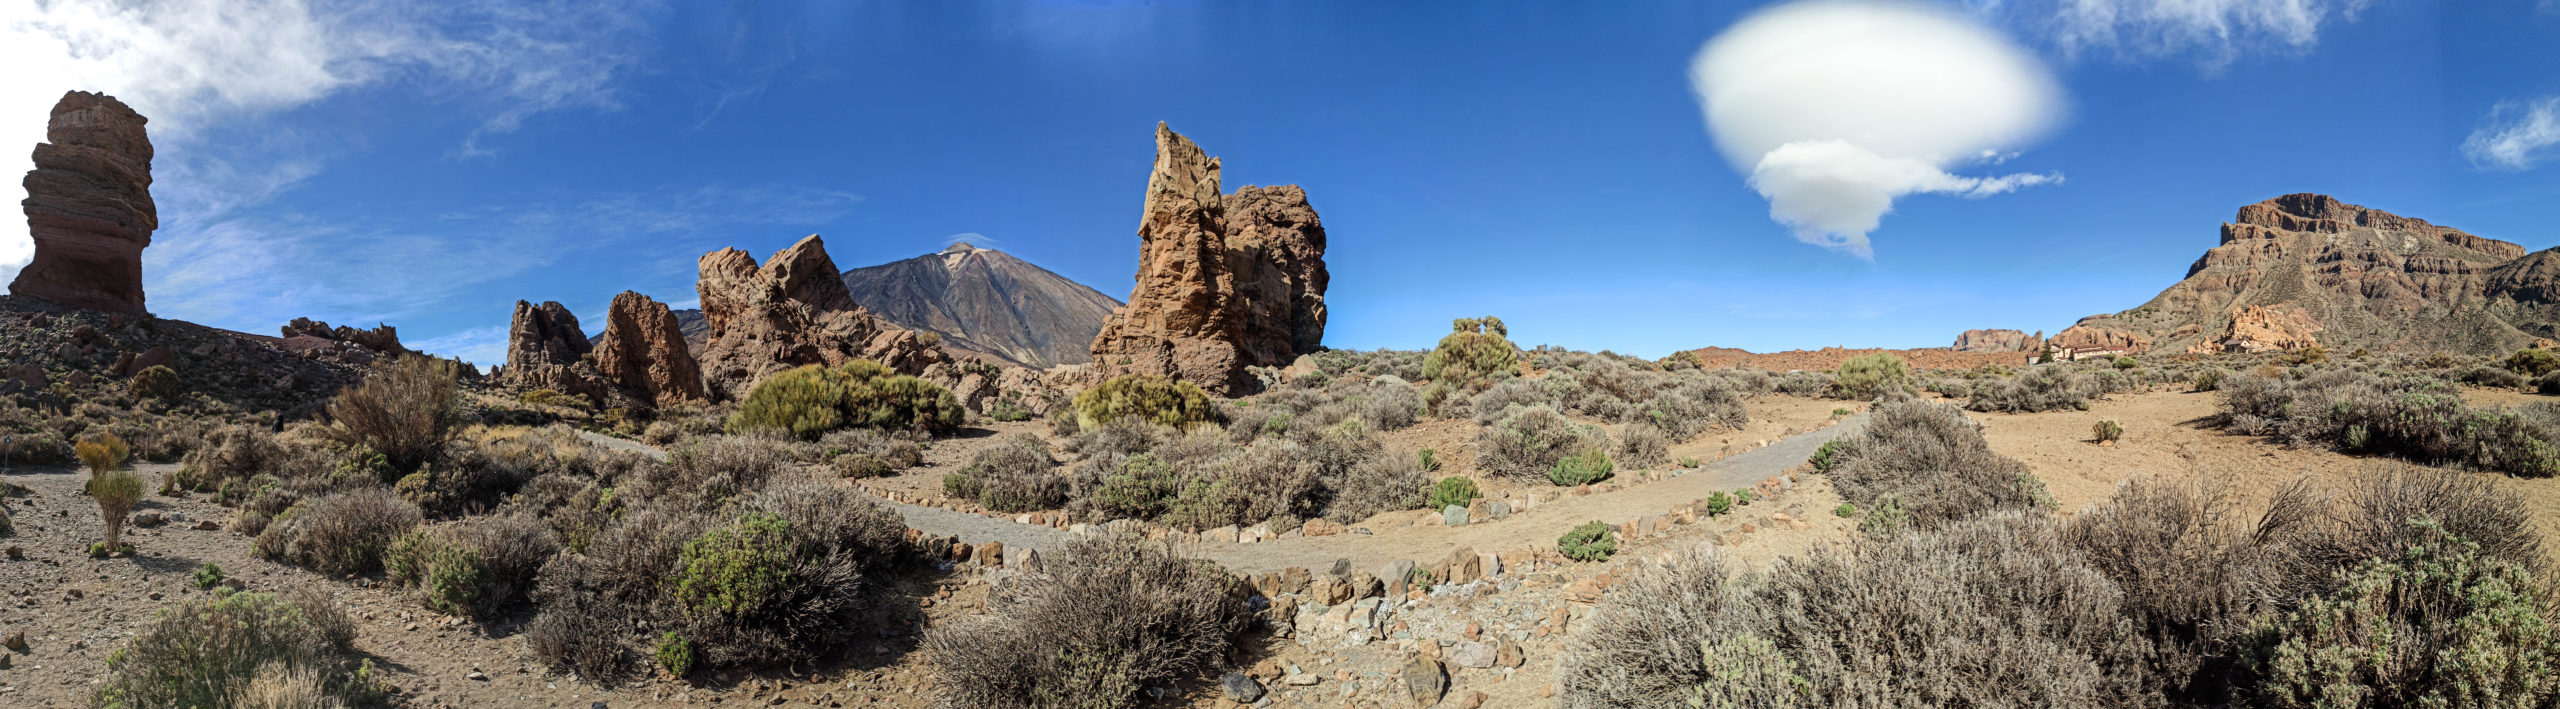 Panorama des Roques de Garcia à Tenerife, avec le volcan Teide au fond